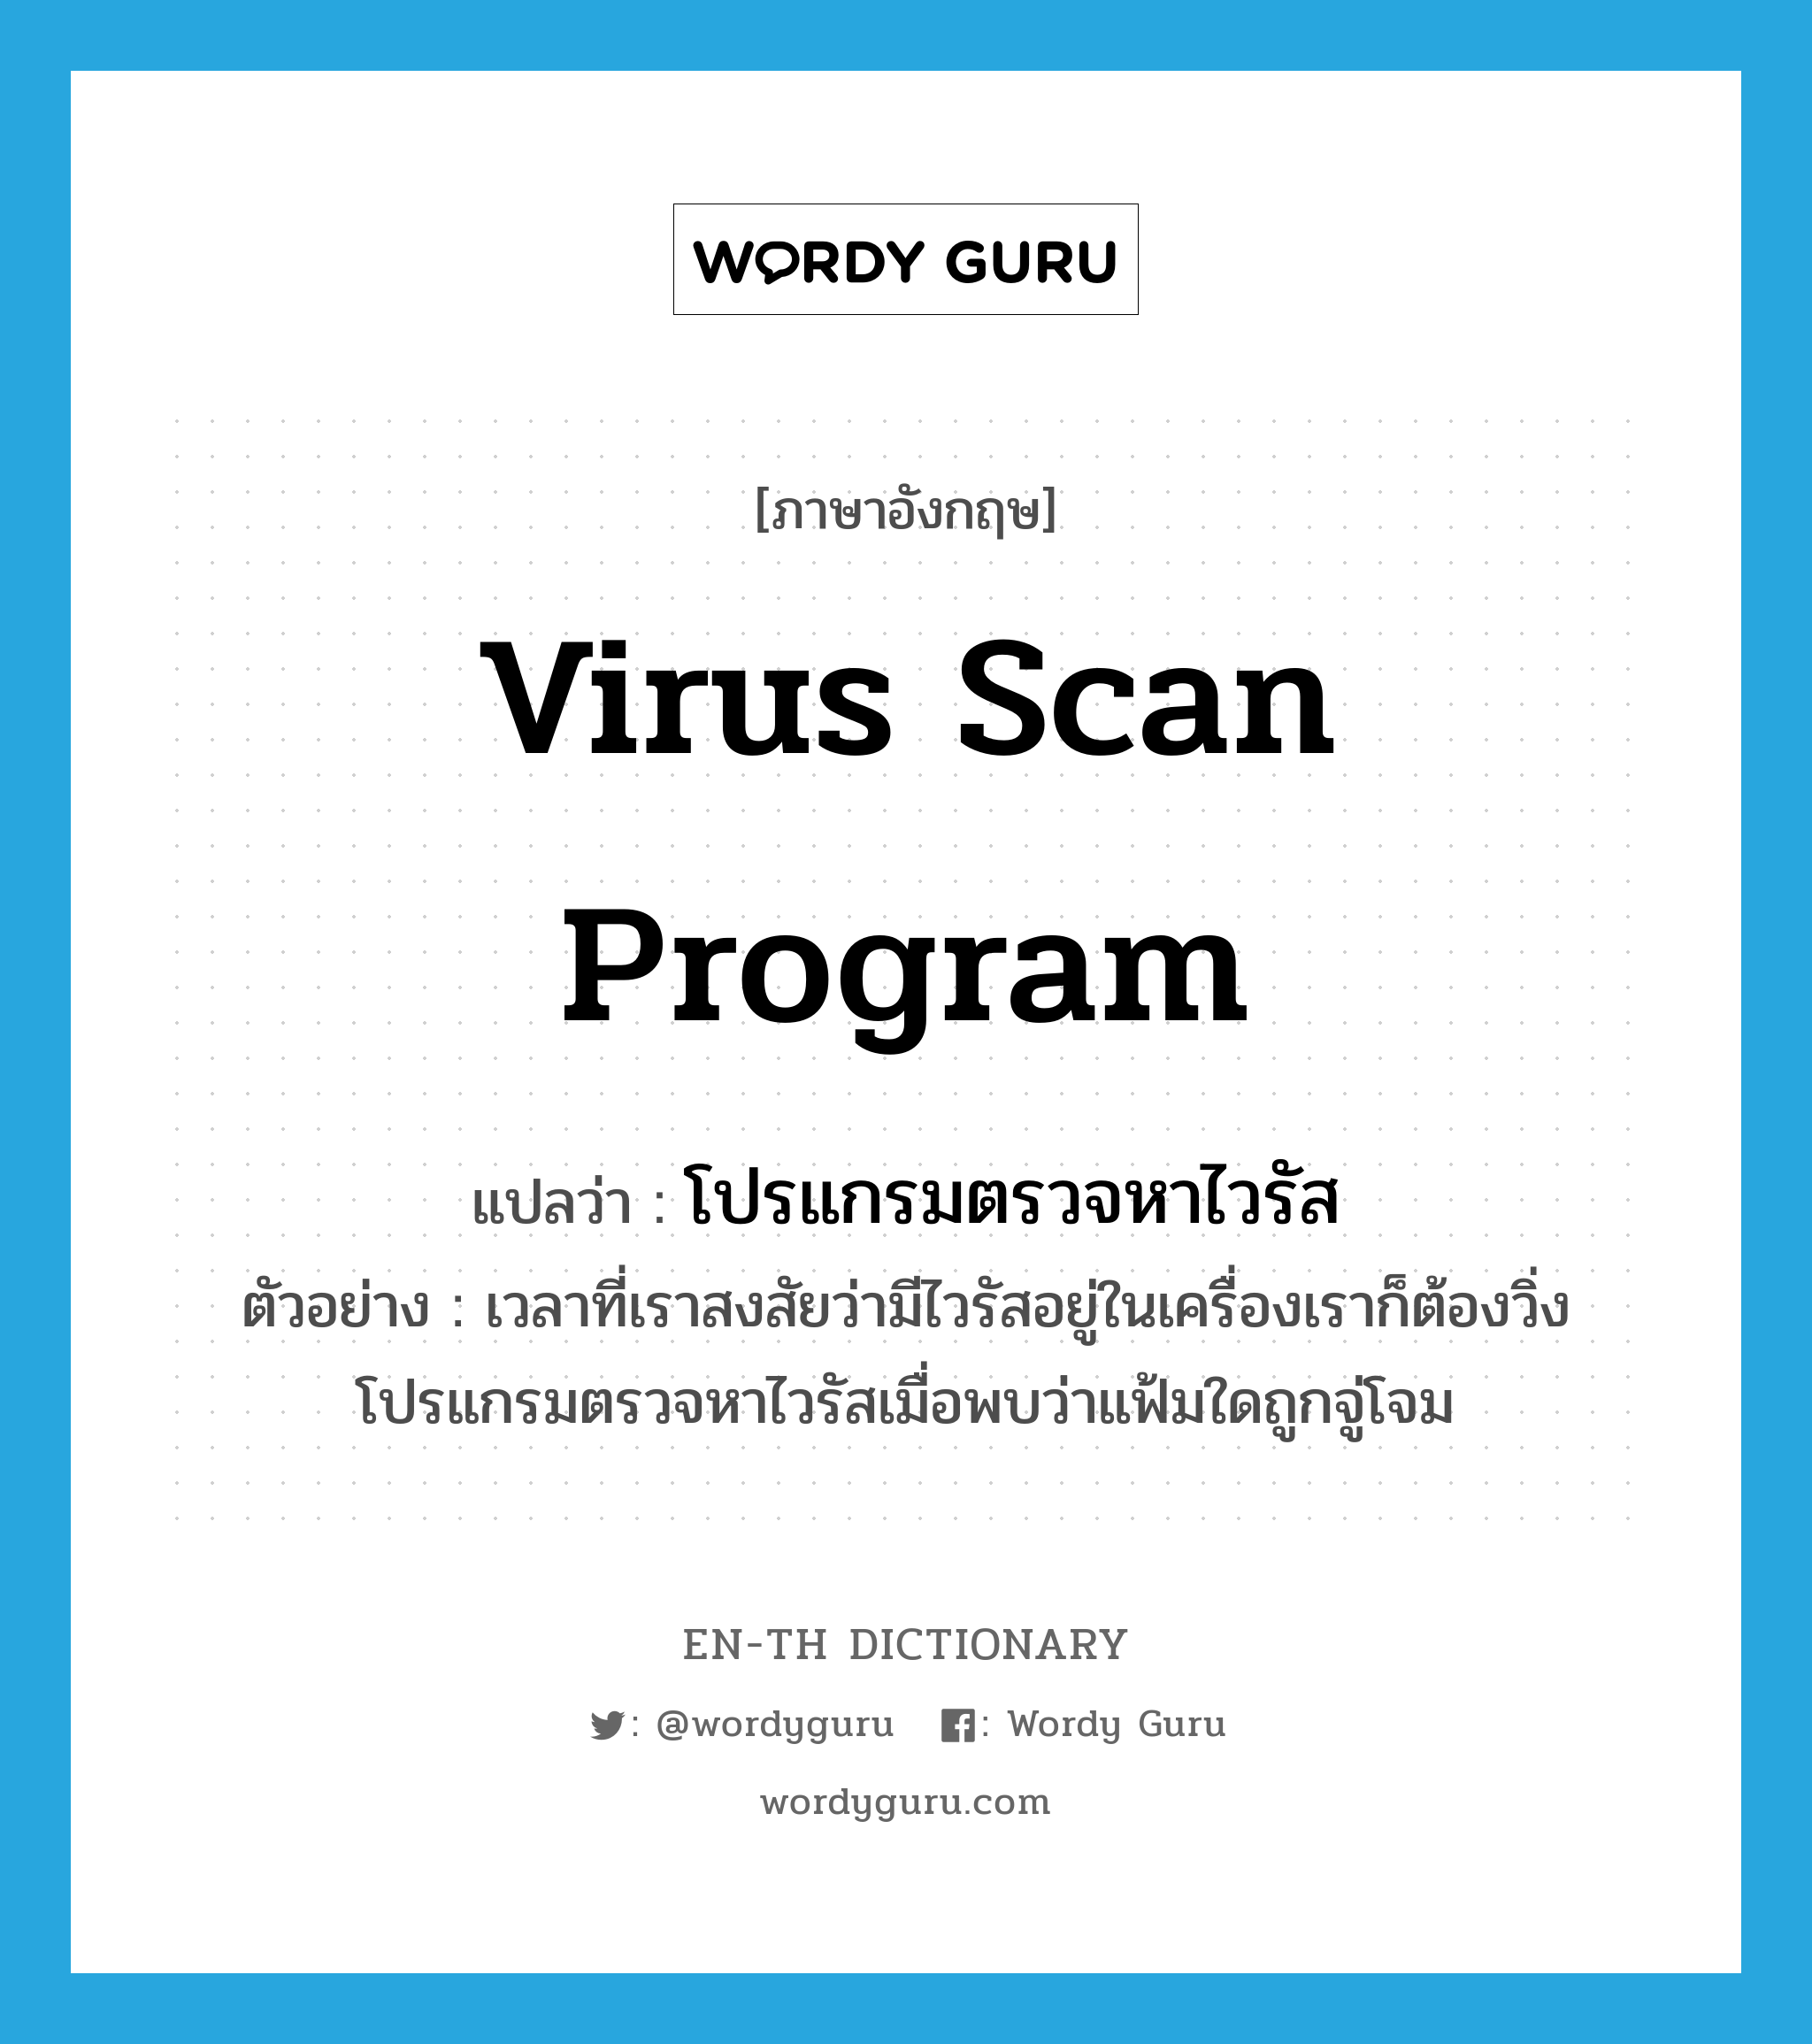 โปรแกรมตรวจหาไวรัส ภาษาอังกฤษ?, คำศัพท์ภาษาอังกฤษ โปรแกรมตรวจหาไวรัส แปลว่า virus scan program ประเภท N ตัวอย่าง เวลาที่เราสงสัยว่ามีไวรัสอยู่ในเครื่องเราก็ต้องวิ่งโปรแกรมตรวจหาไวรัสเมื่อพบว่าแฟ้มใดถูกจู่โจม หมวด N